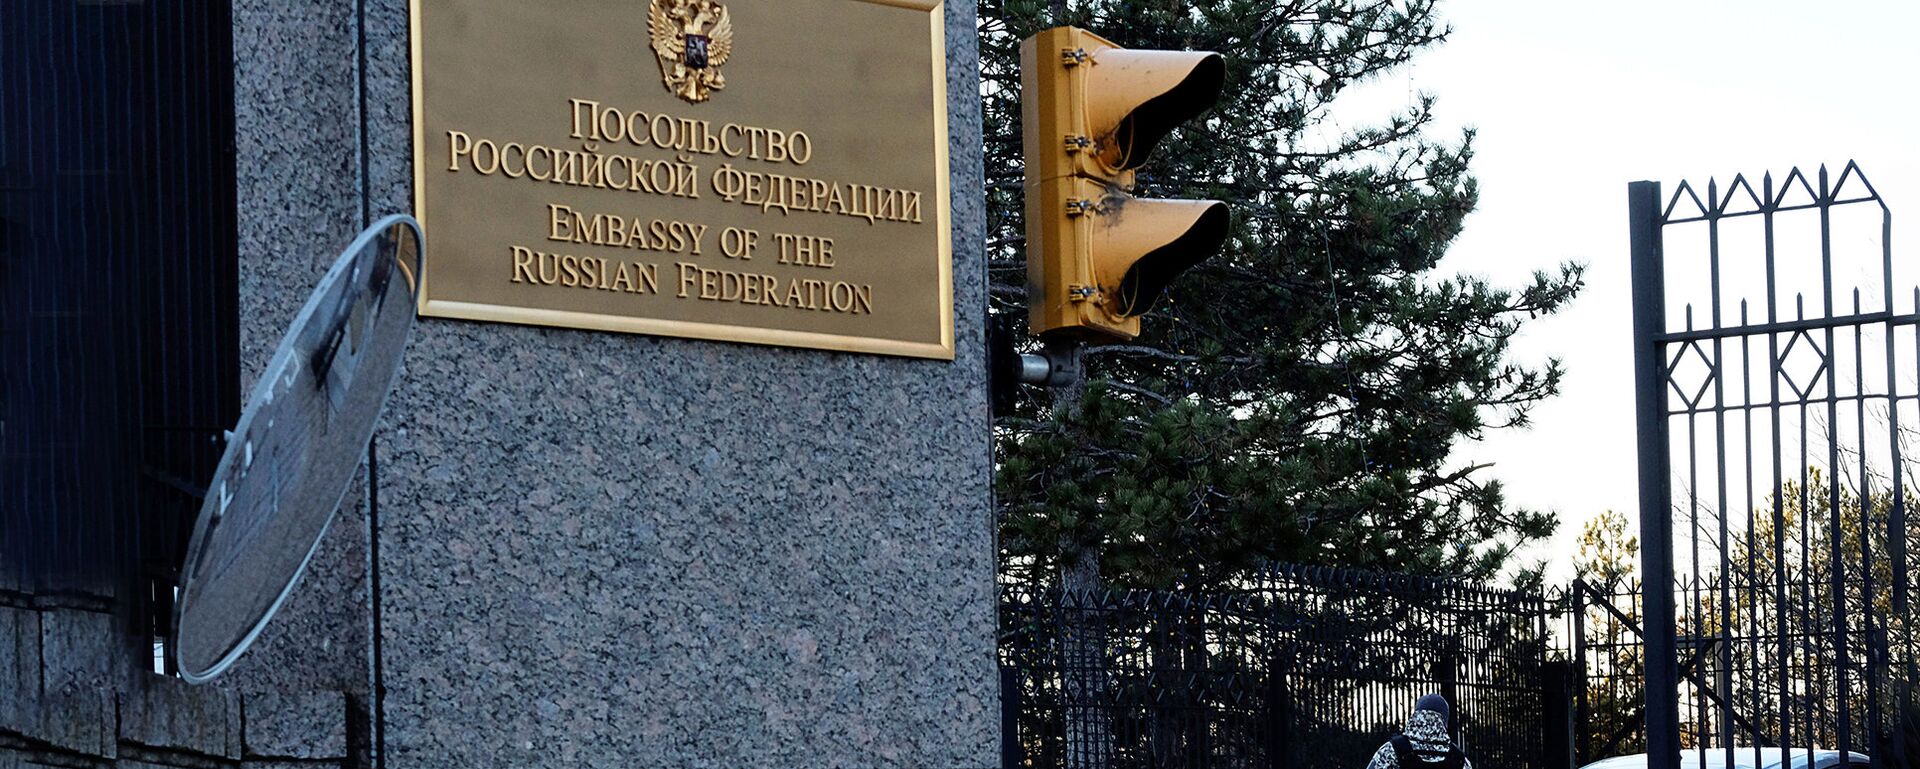 Посольство России на Висконсин-Авеню в Вашингтоне, США - Sputnik Latvija, 1920, 14.12.2020